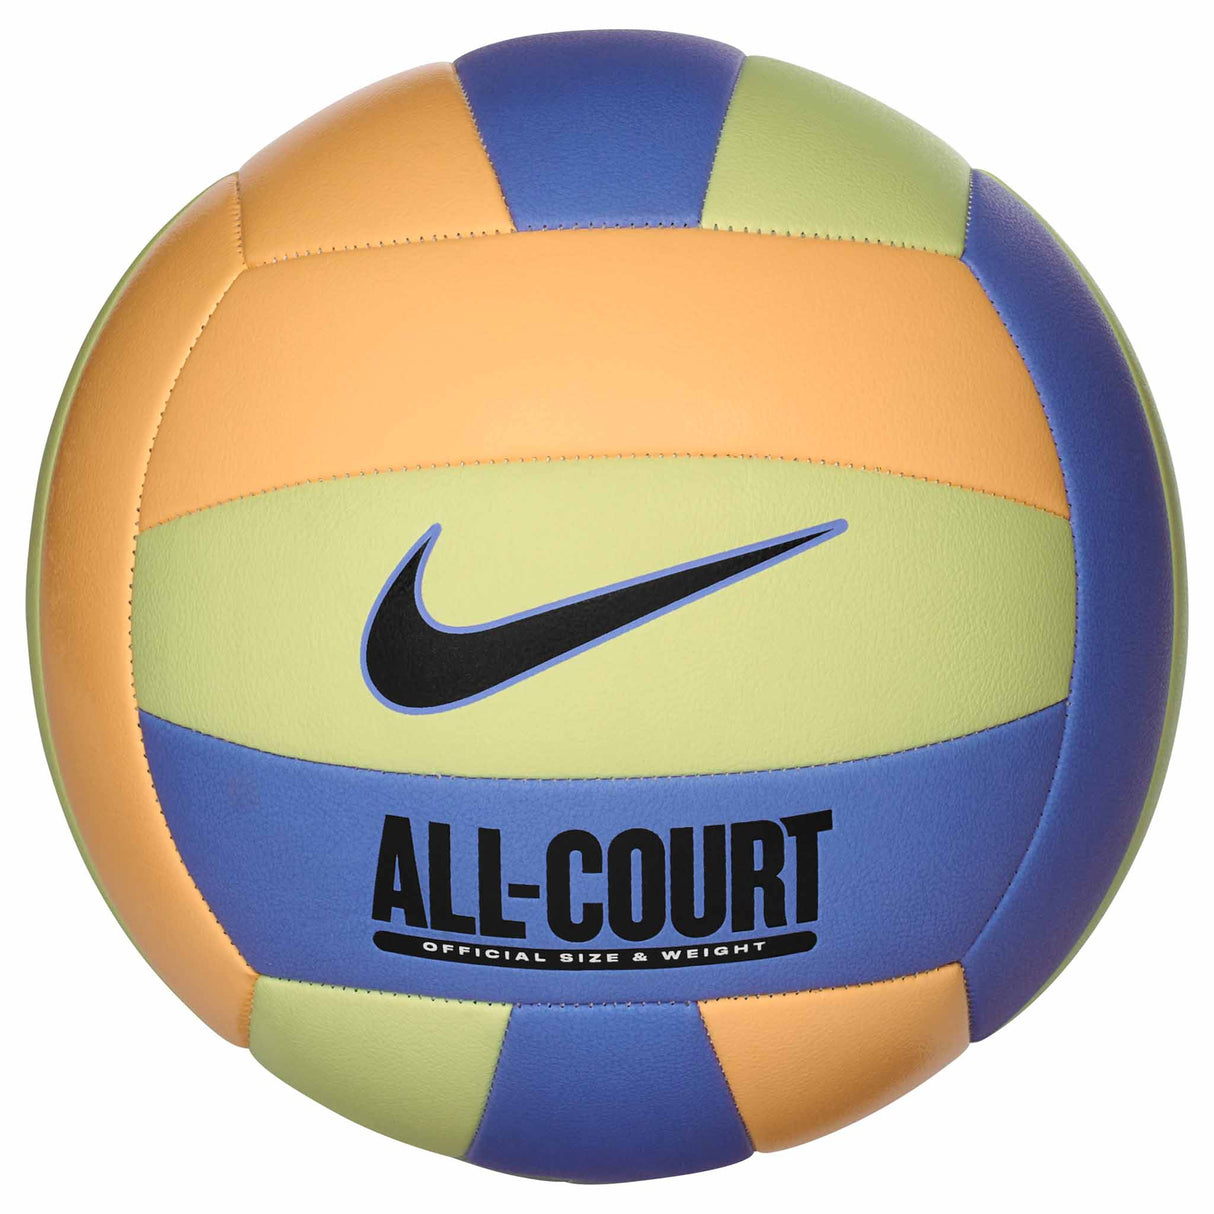 Nike All Court ballon de volleyball - Luminous Green / Melon Tint / Polar